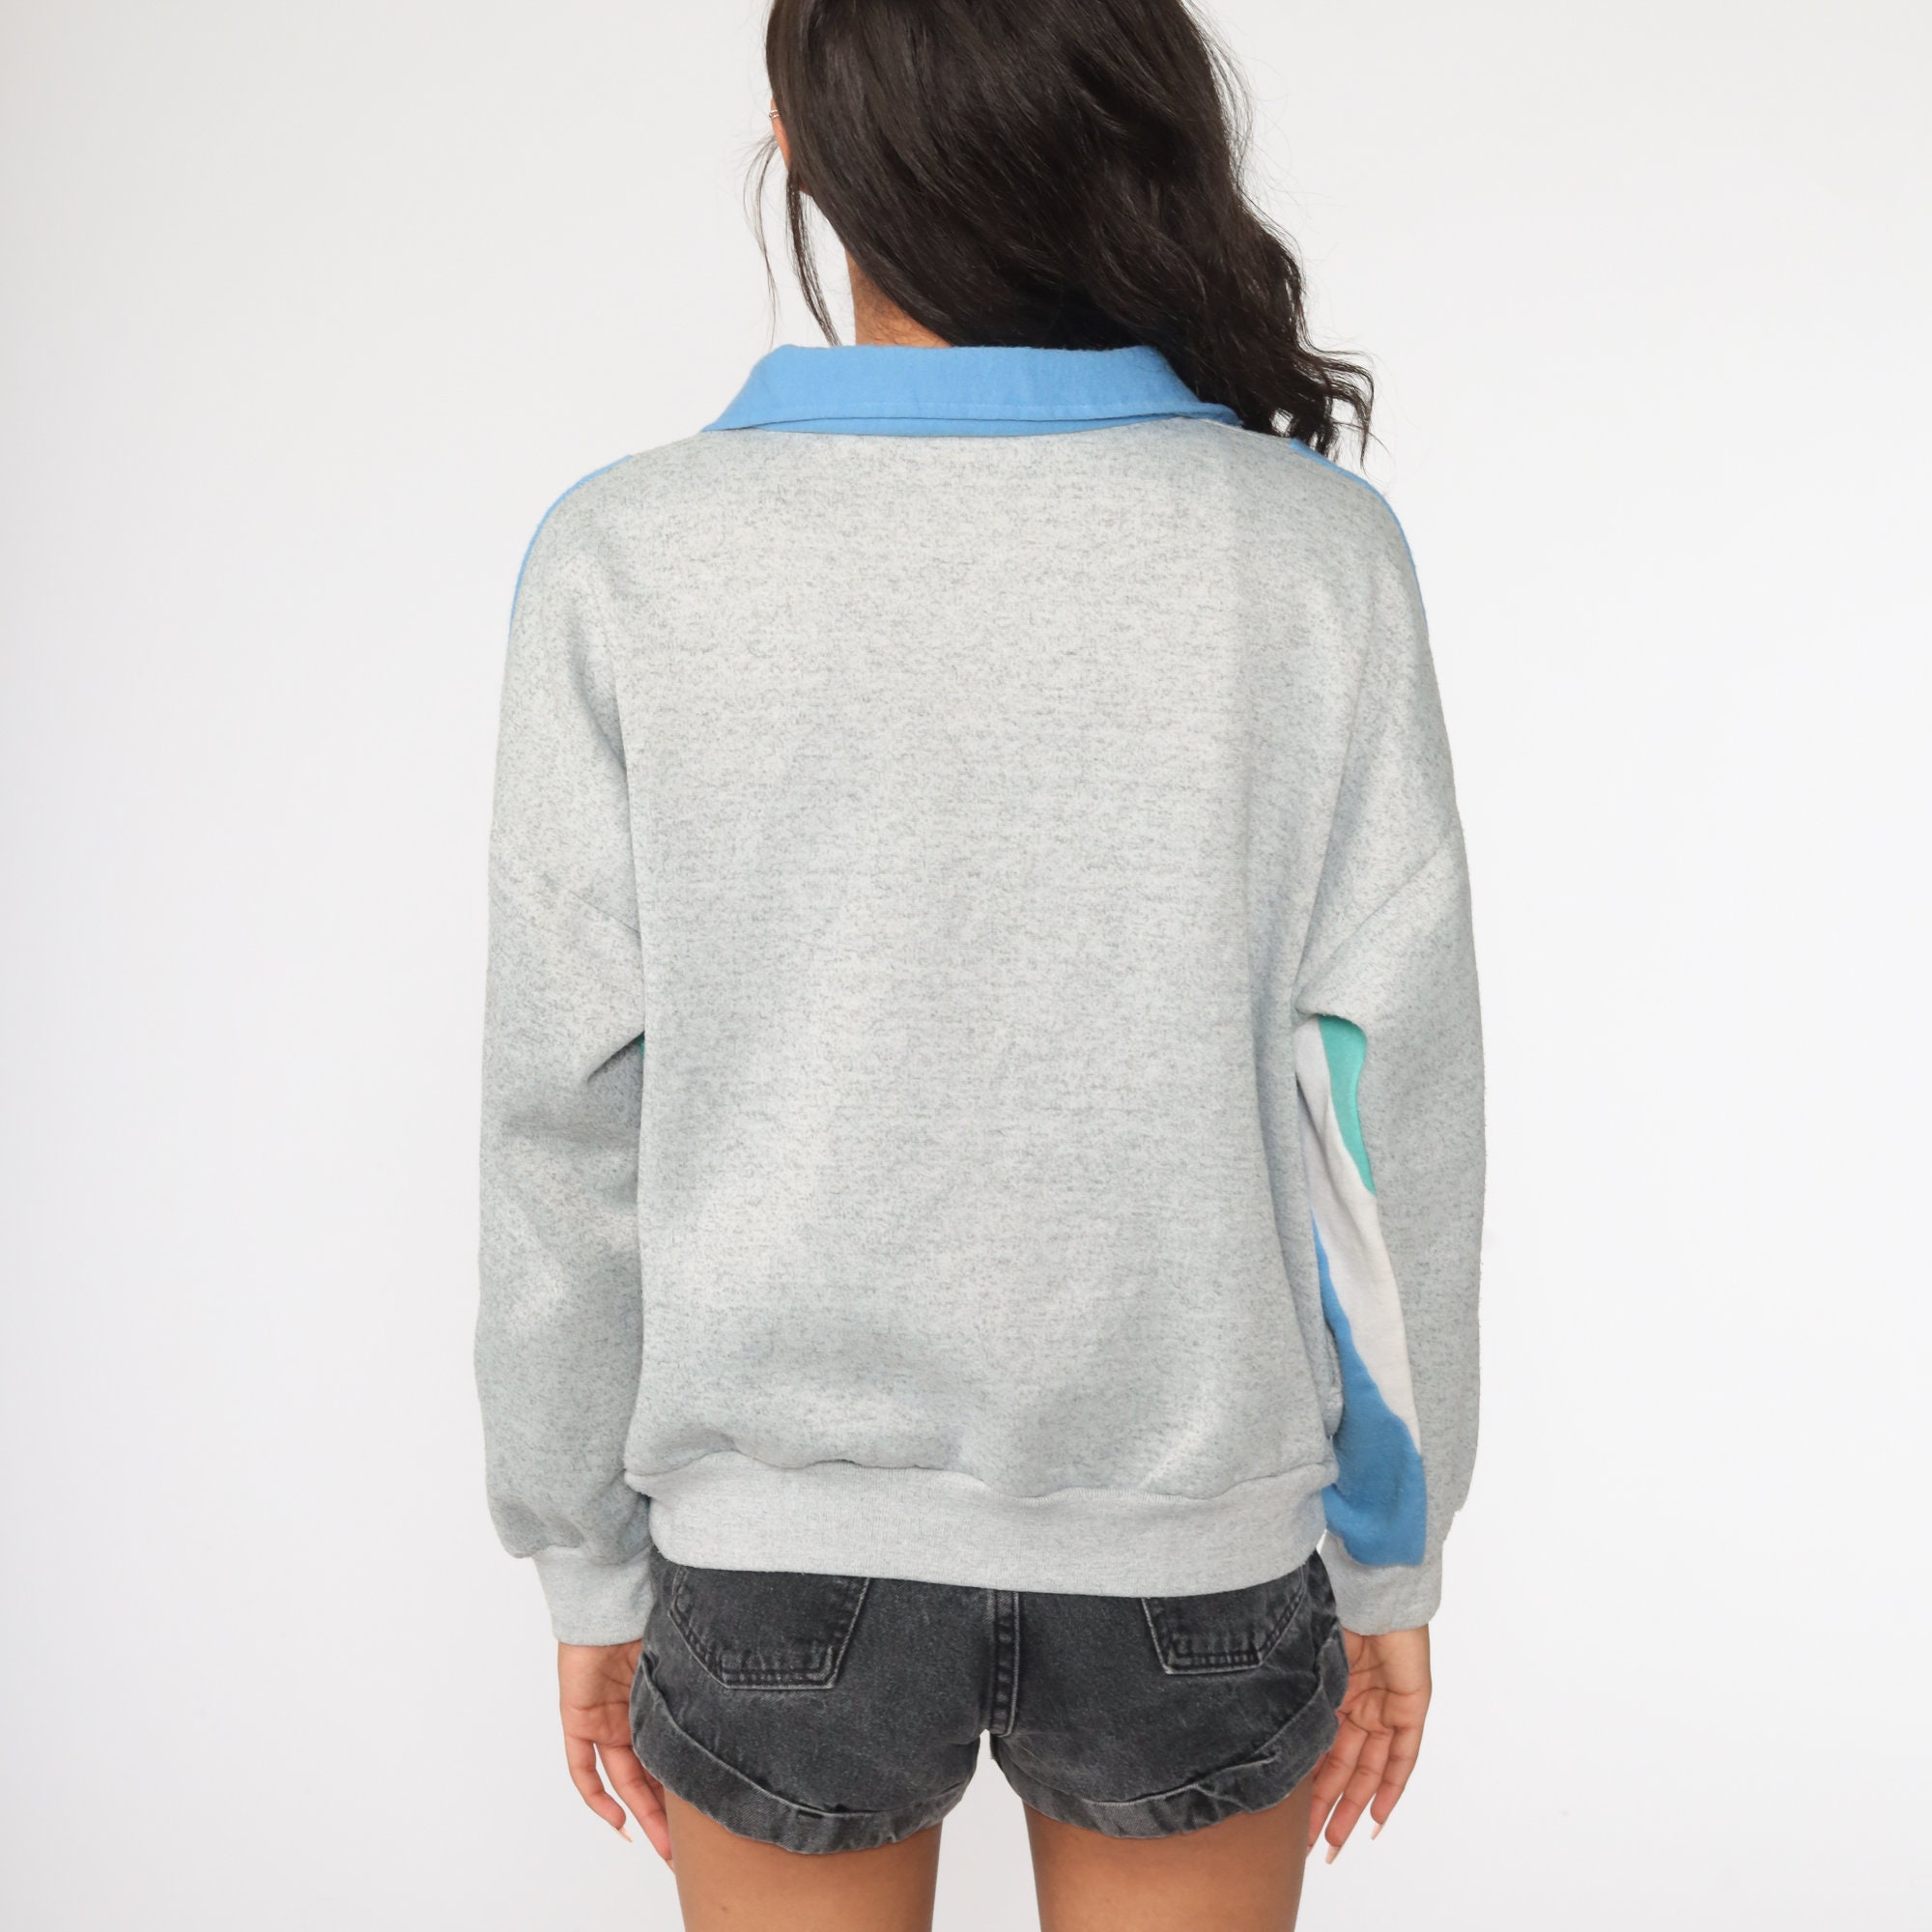 80s Zip Up Sweatshirt -- Track Jacket Sweatshirt Grey Pastel Color